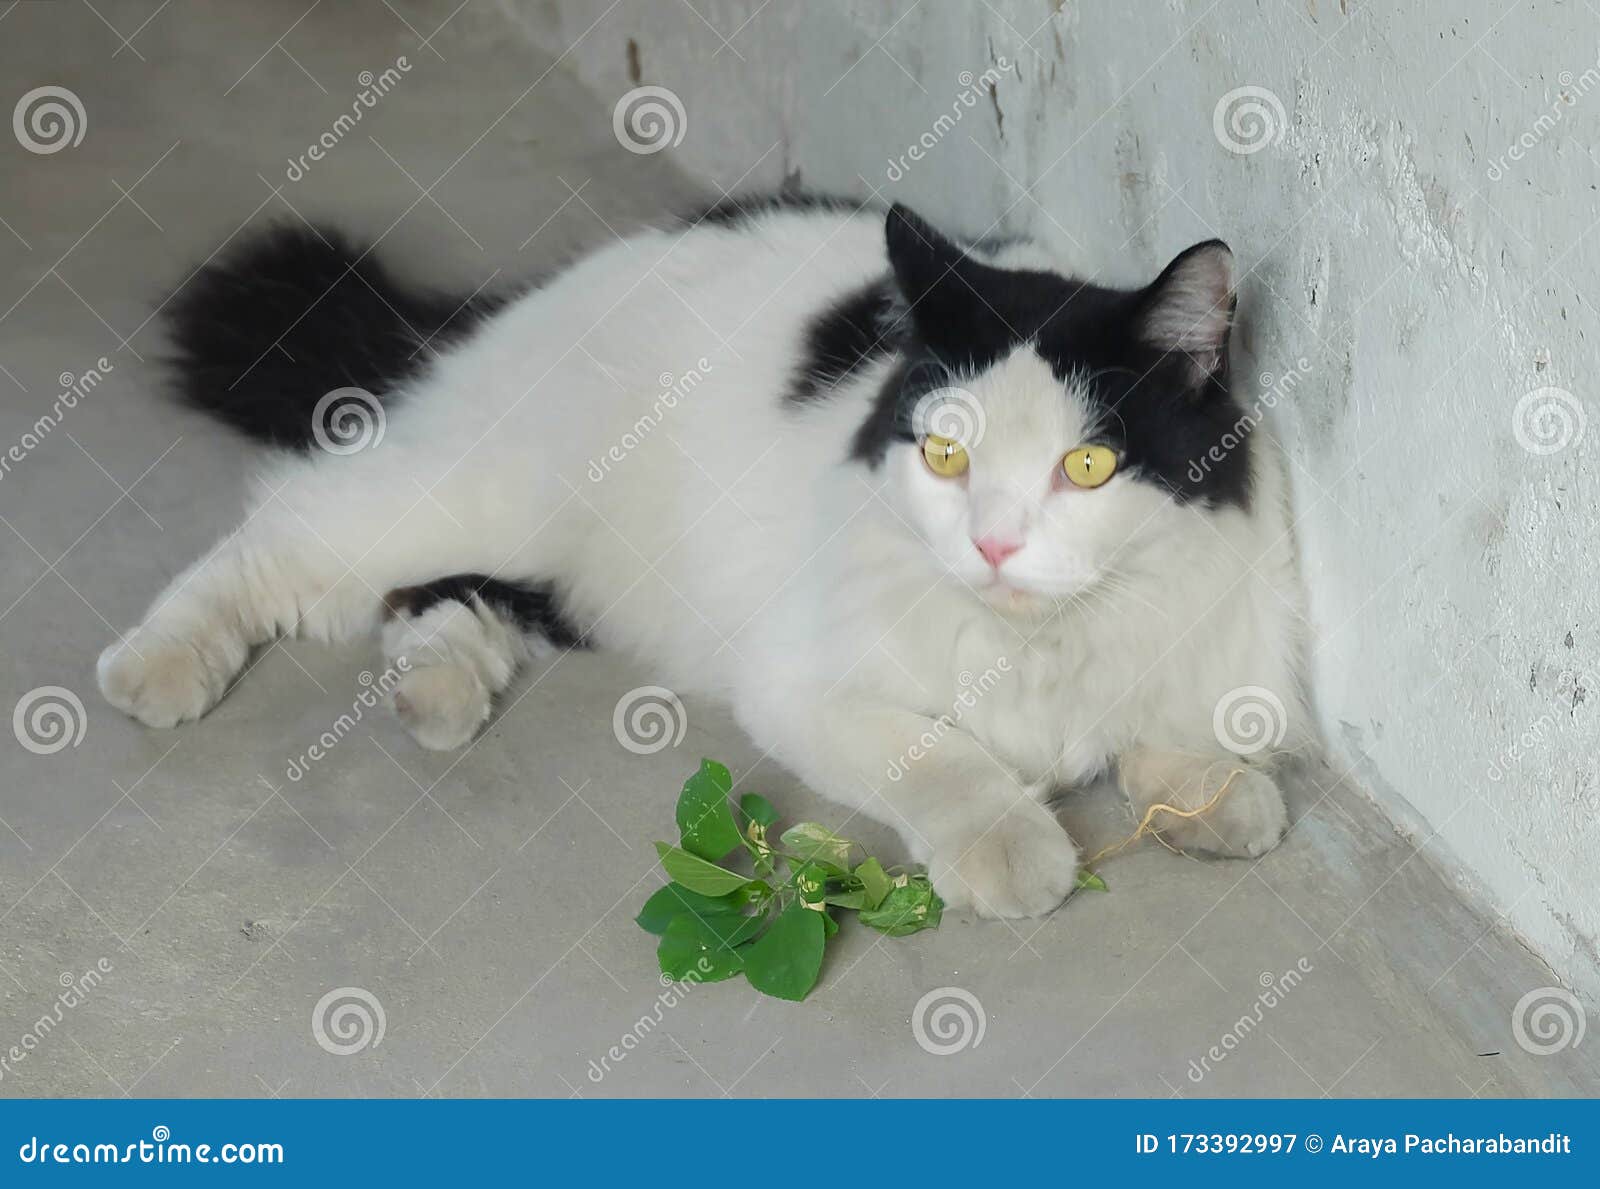 Gato Comiendo Acalypha O Grasa De Gato Imagen archivo - Imagen de alcaloide, 173392997